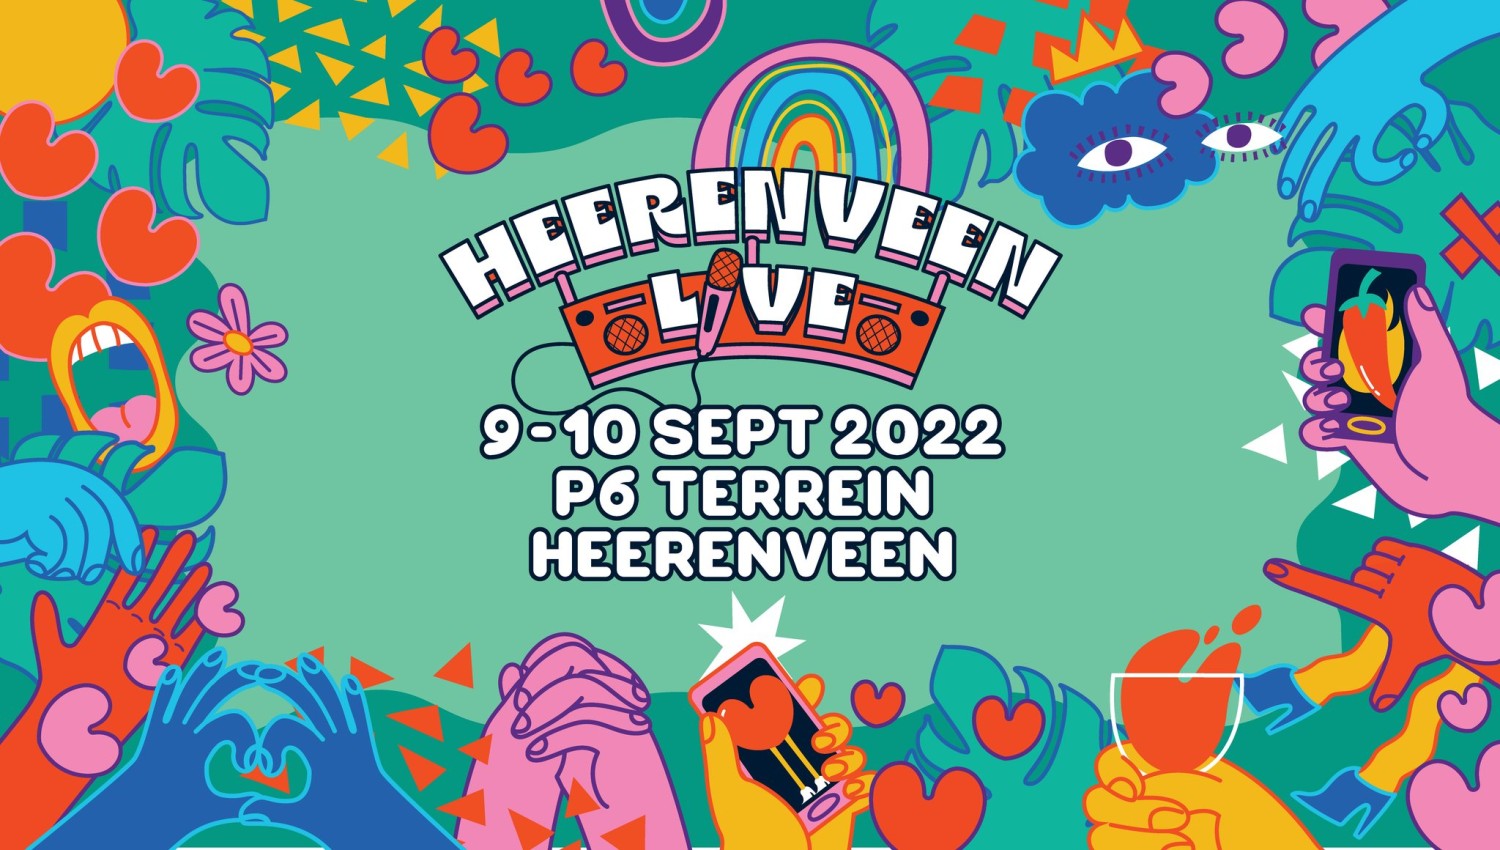 Heerenveen Live 2022